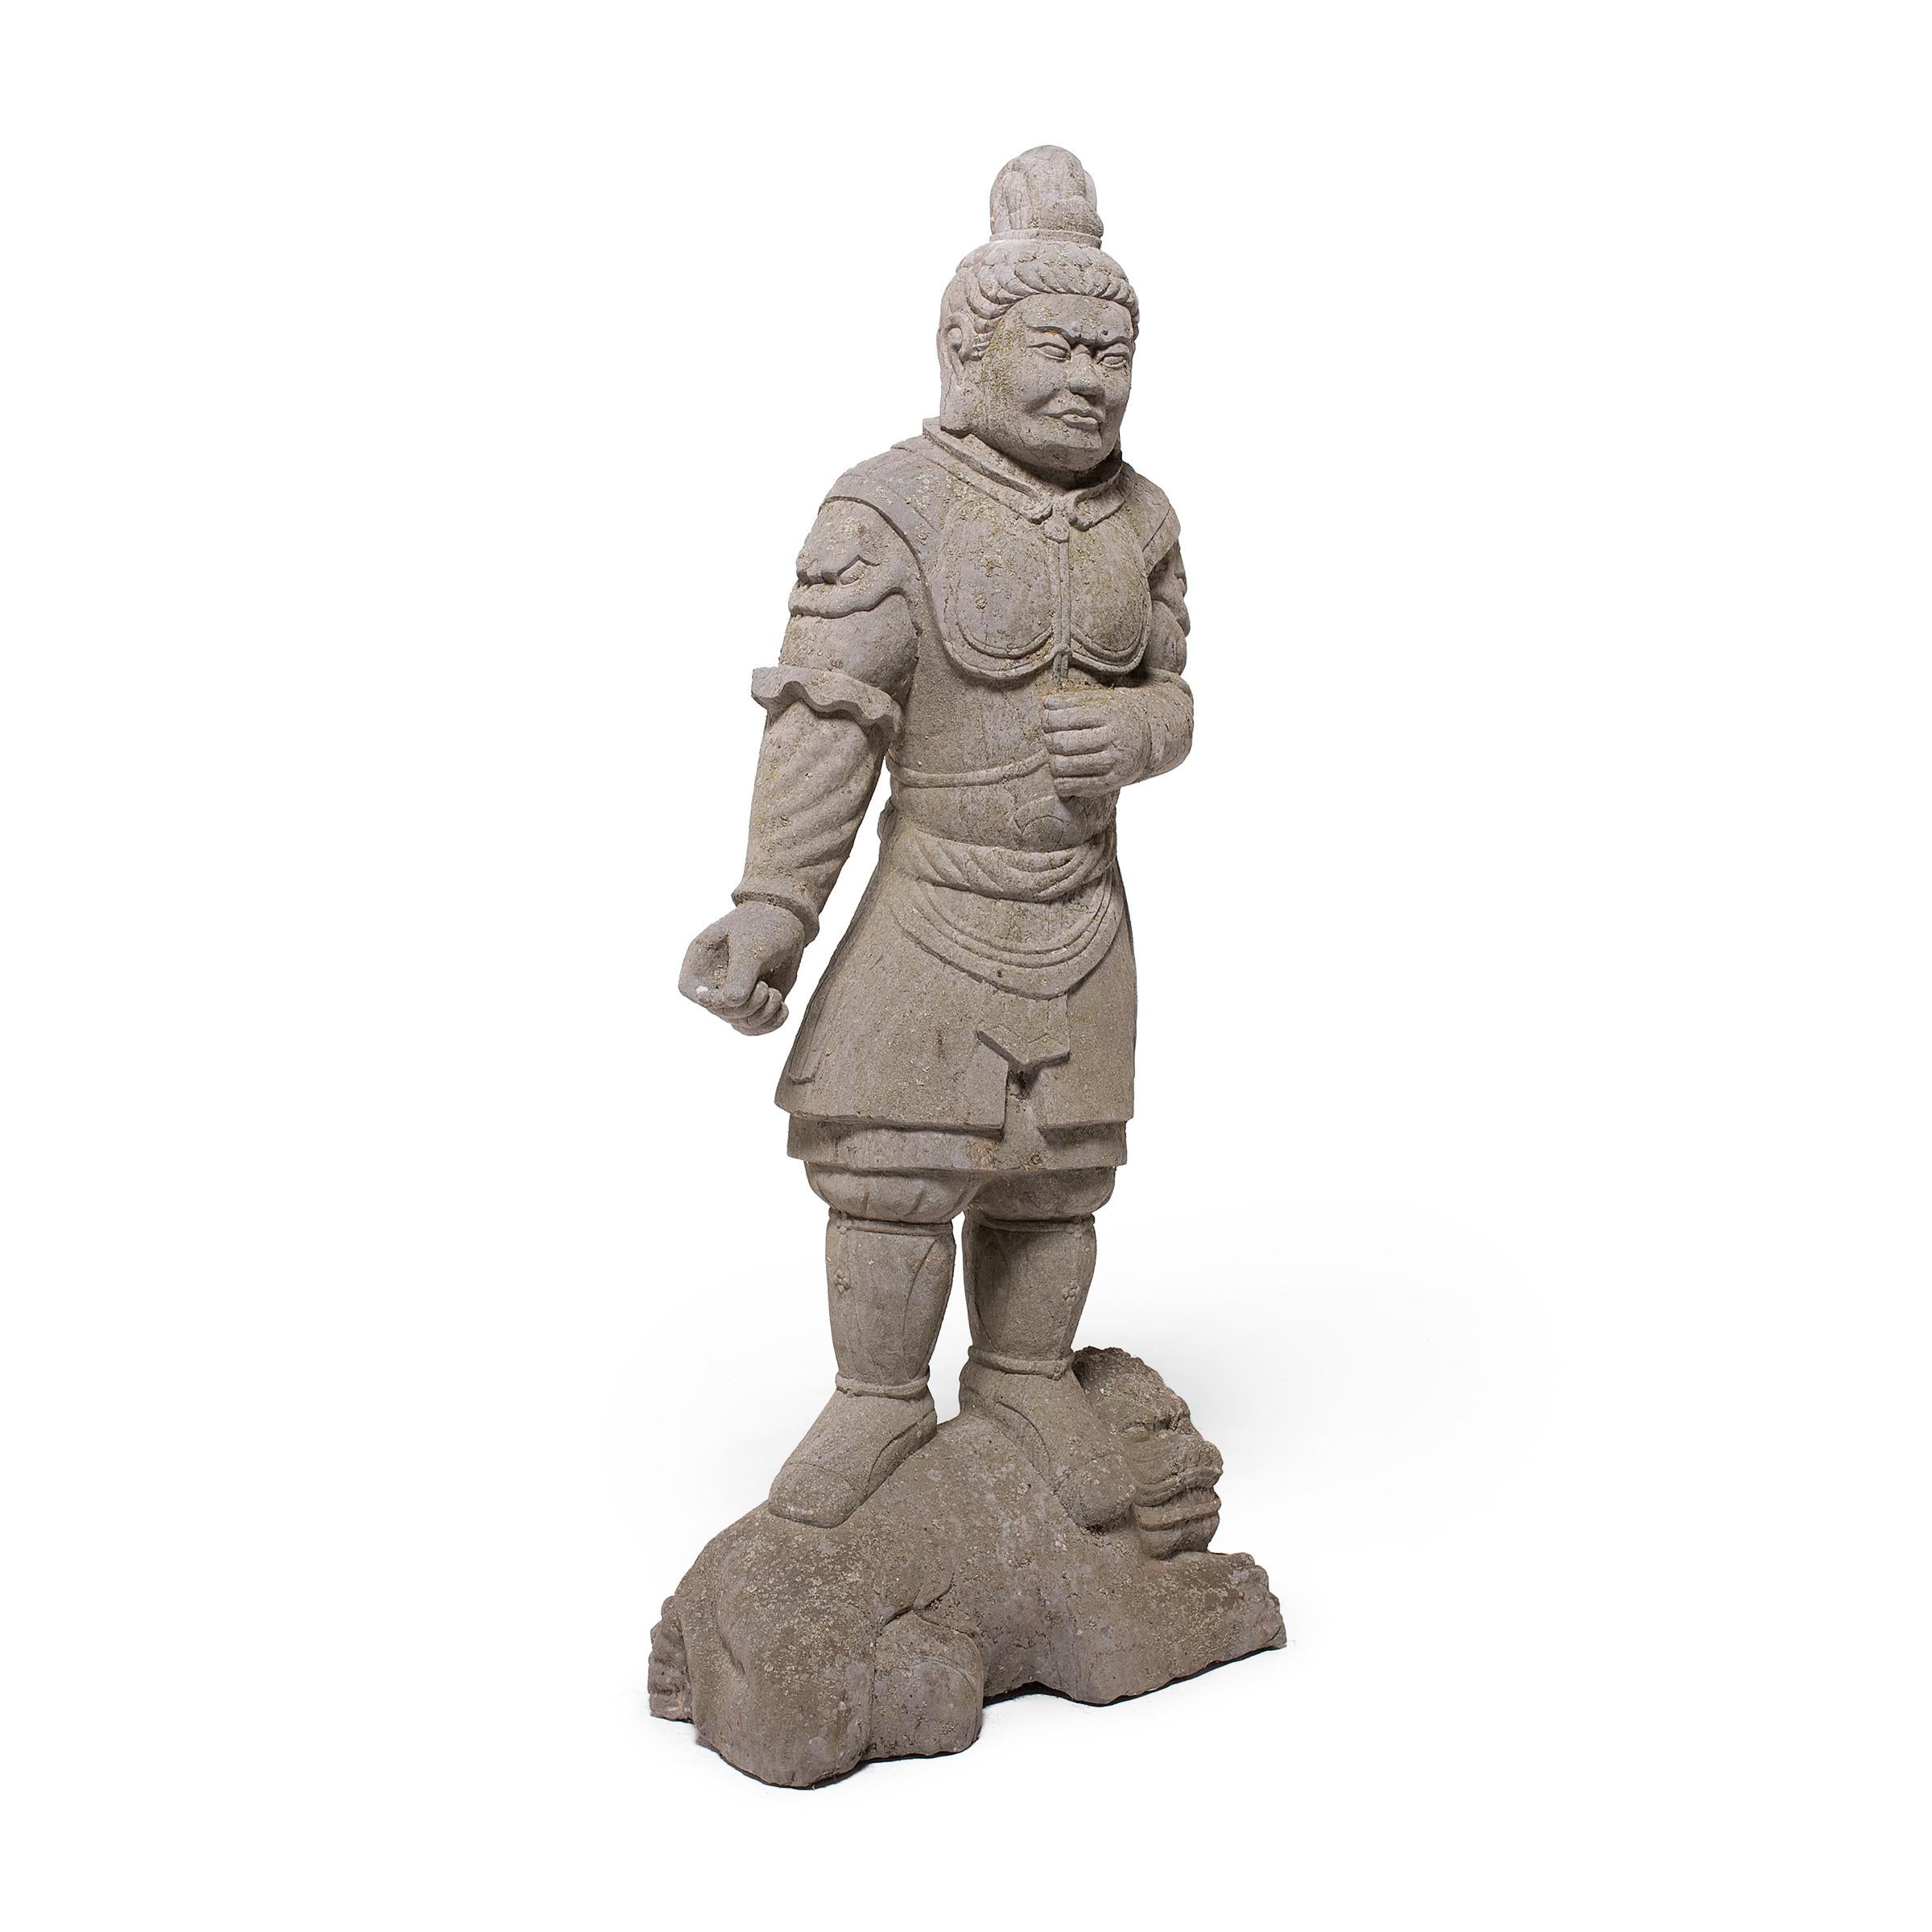 Diese handgeschnitzte Steinstatue stellt einen furchterregenden chinesischen Krieger oder General dar, gekleidet in eine Rüstung mit Brustplatte und Fu-Hund-Ärmeln. Er steht auf einem liegenden Fu-Hund oder Shizi, eine Haltung, die die Herrschaft